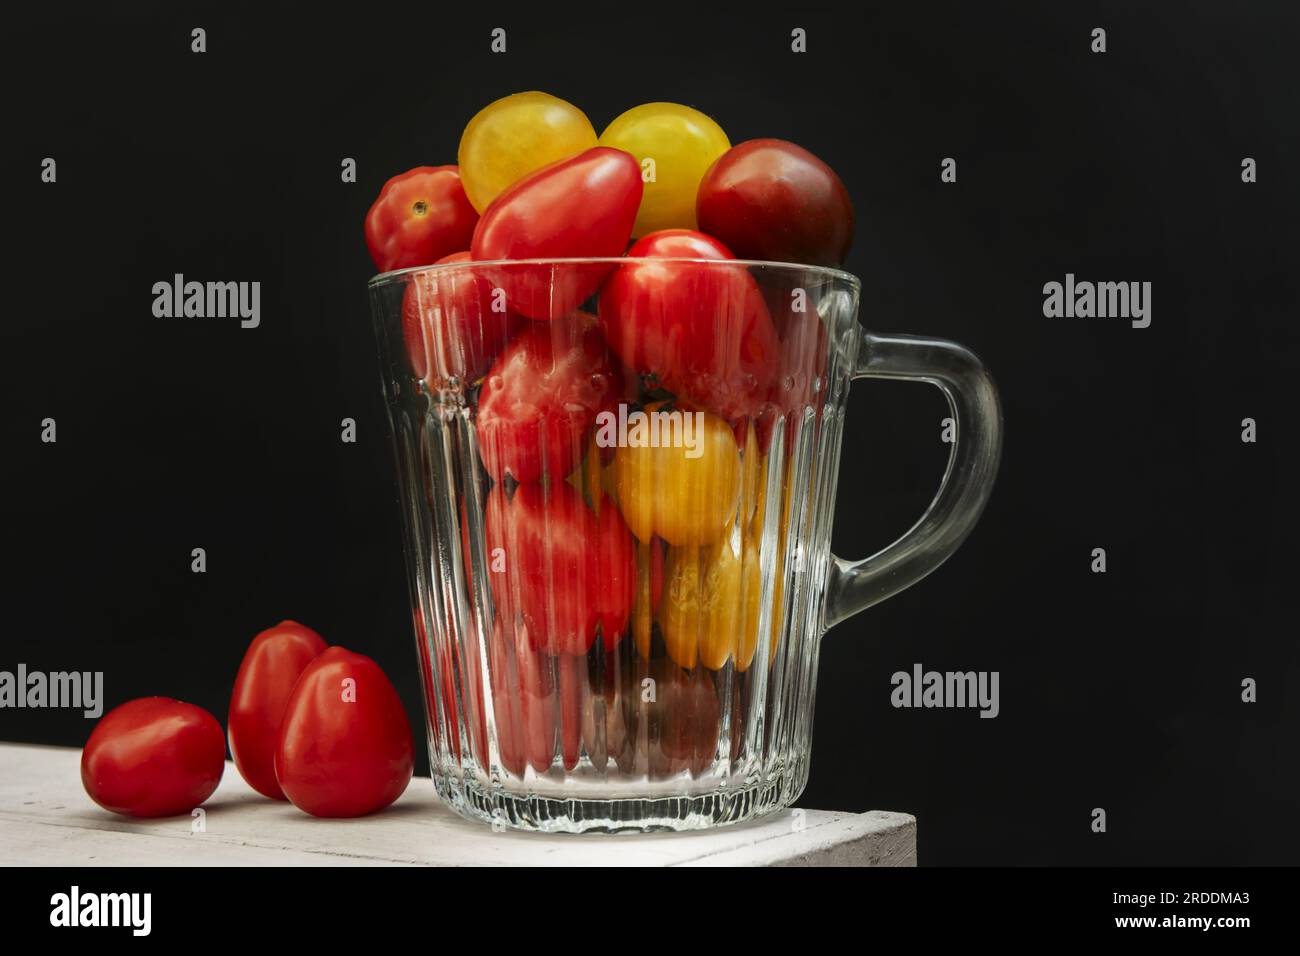 Un piccolo vaso di vetro trasparente riempito con pomodori ciliegini maturi di diverse varietà miste Foto Stock